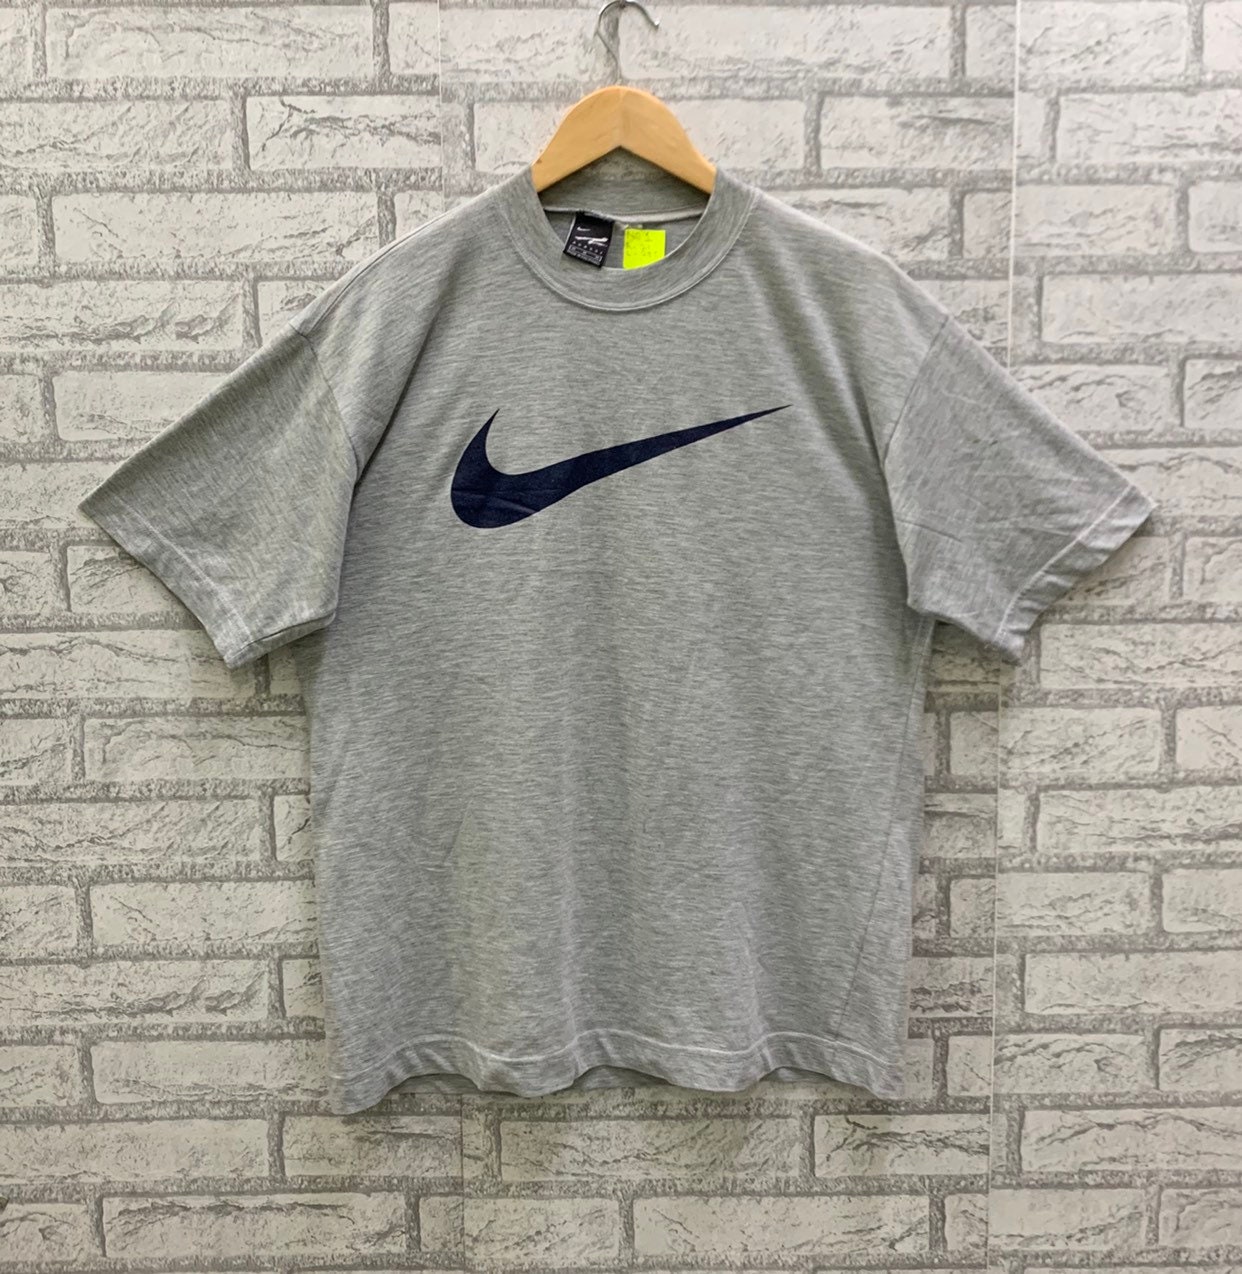 Nike tennis shirt - Etsy